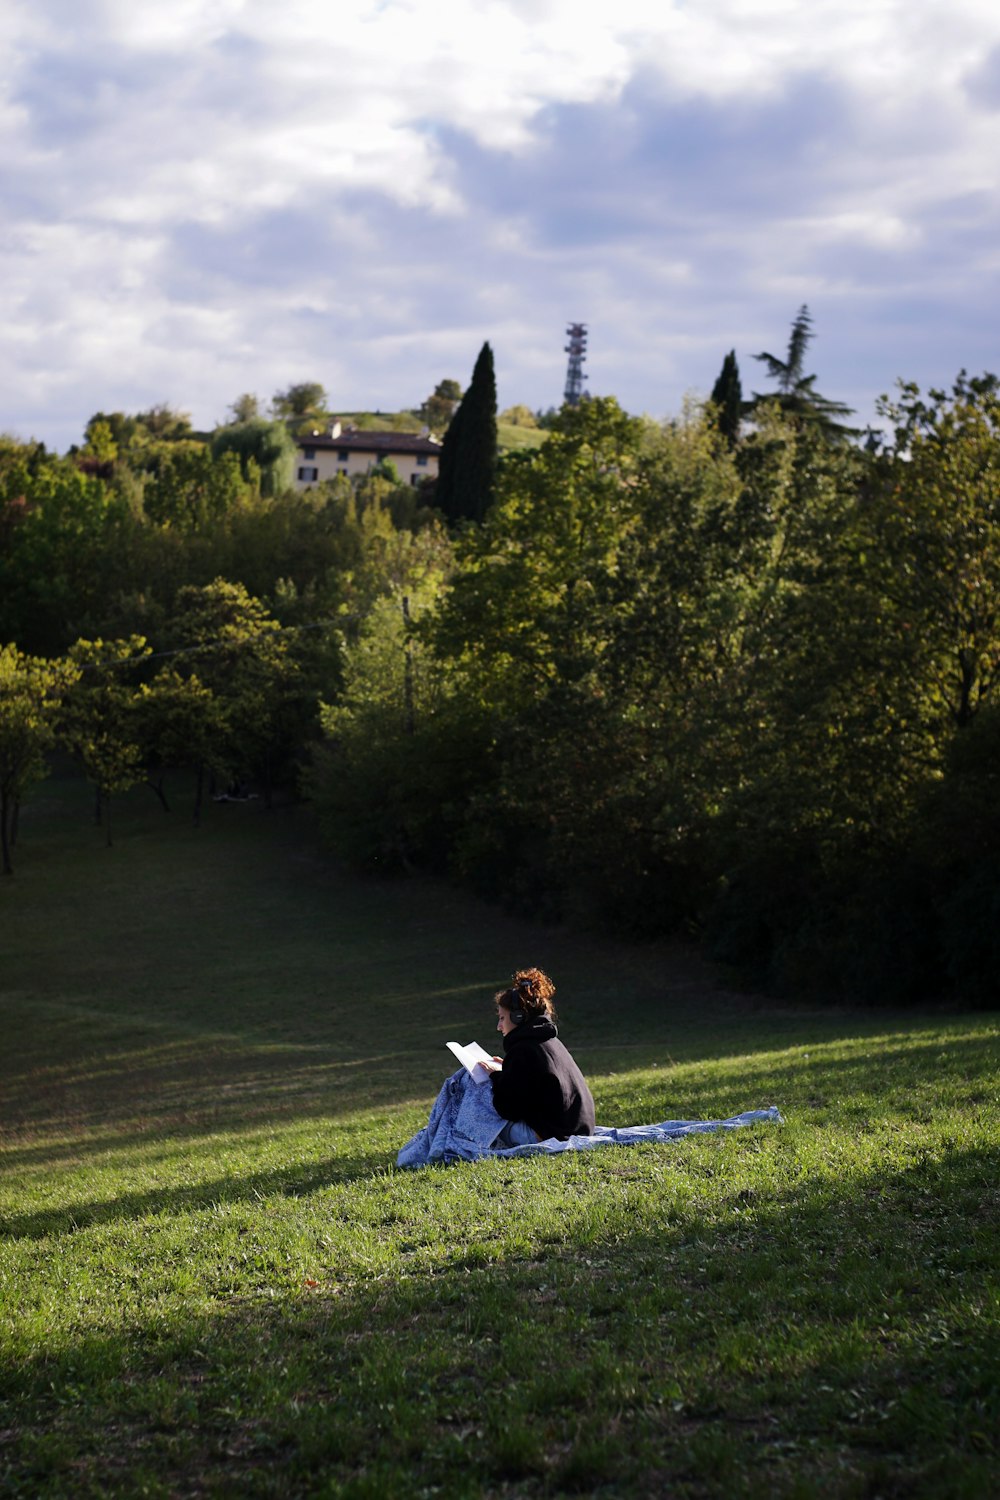 낮 동안 푸른 잔디밭에 앉아 파란 드레스를 입은 여자